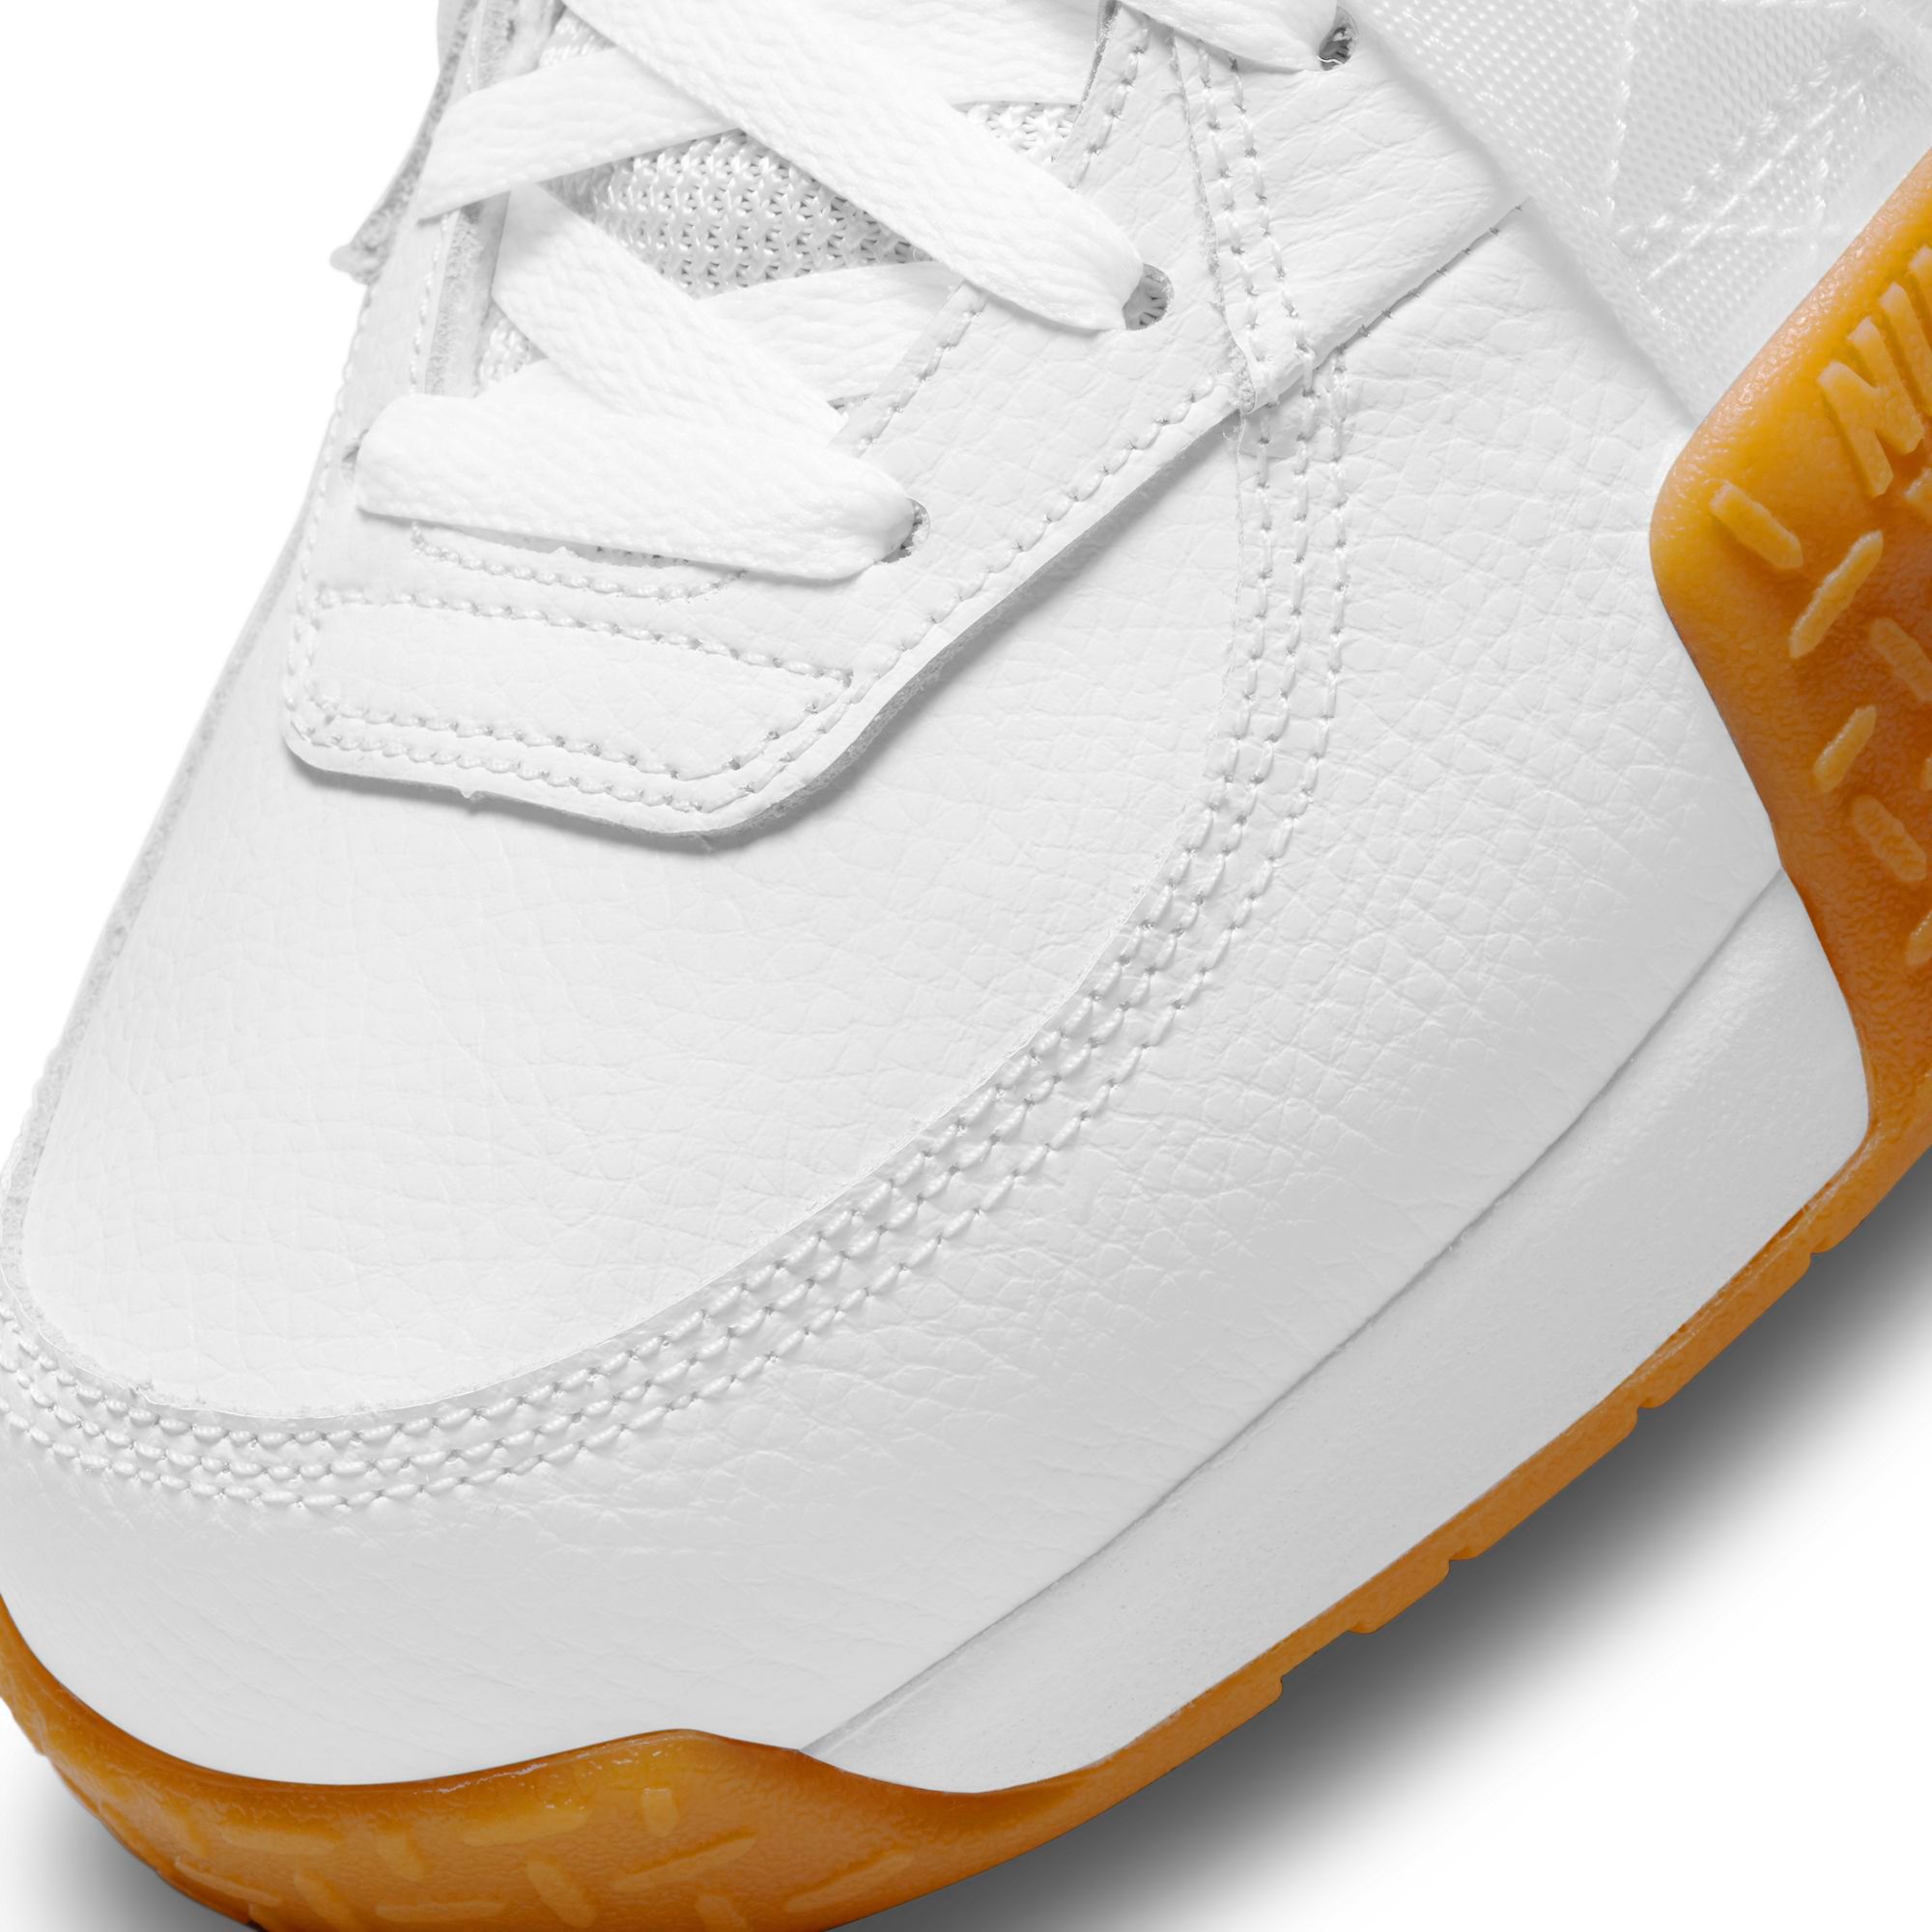 Nike Air Raid White/Gum Light Brown Release Date